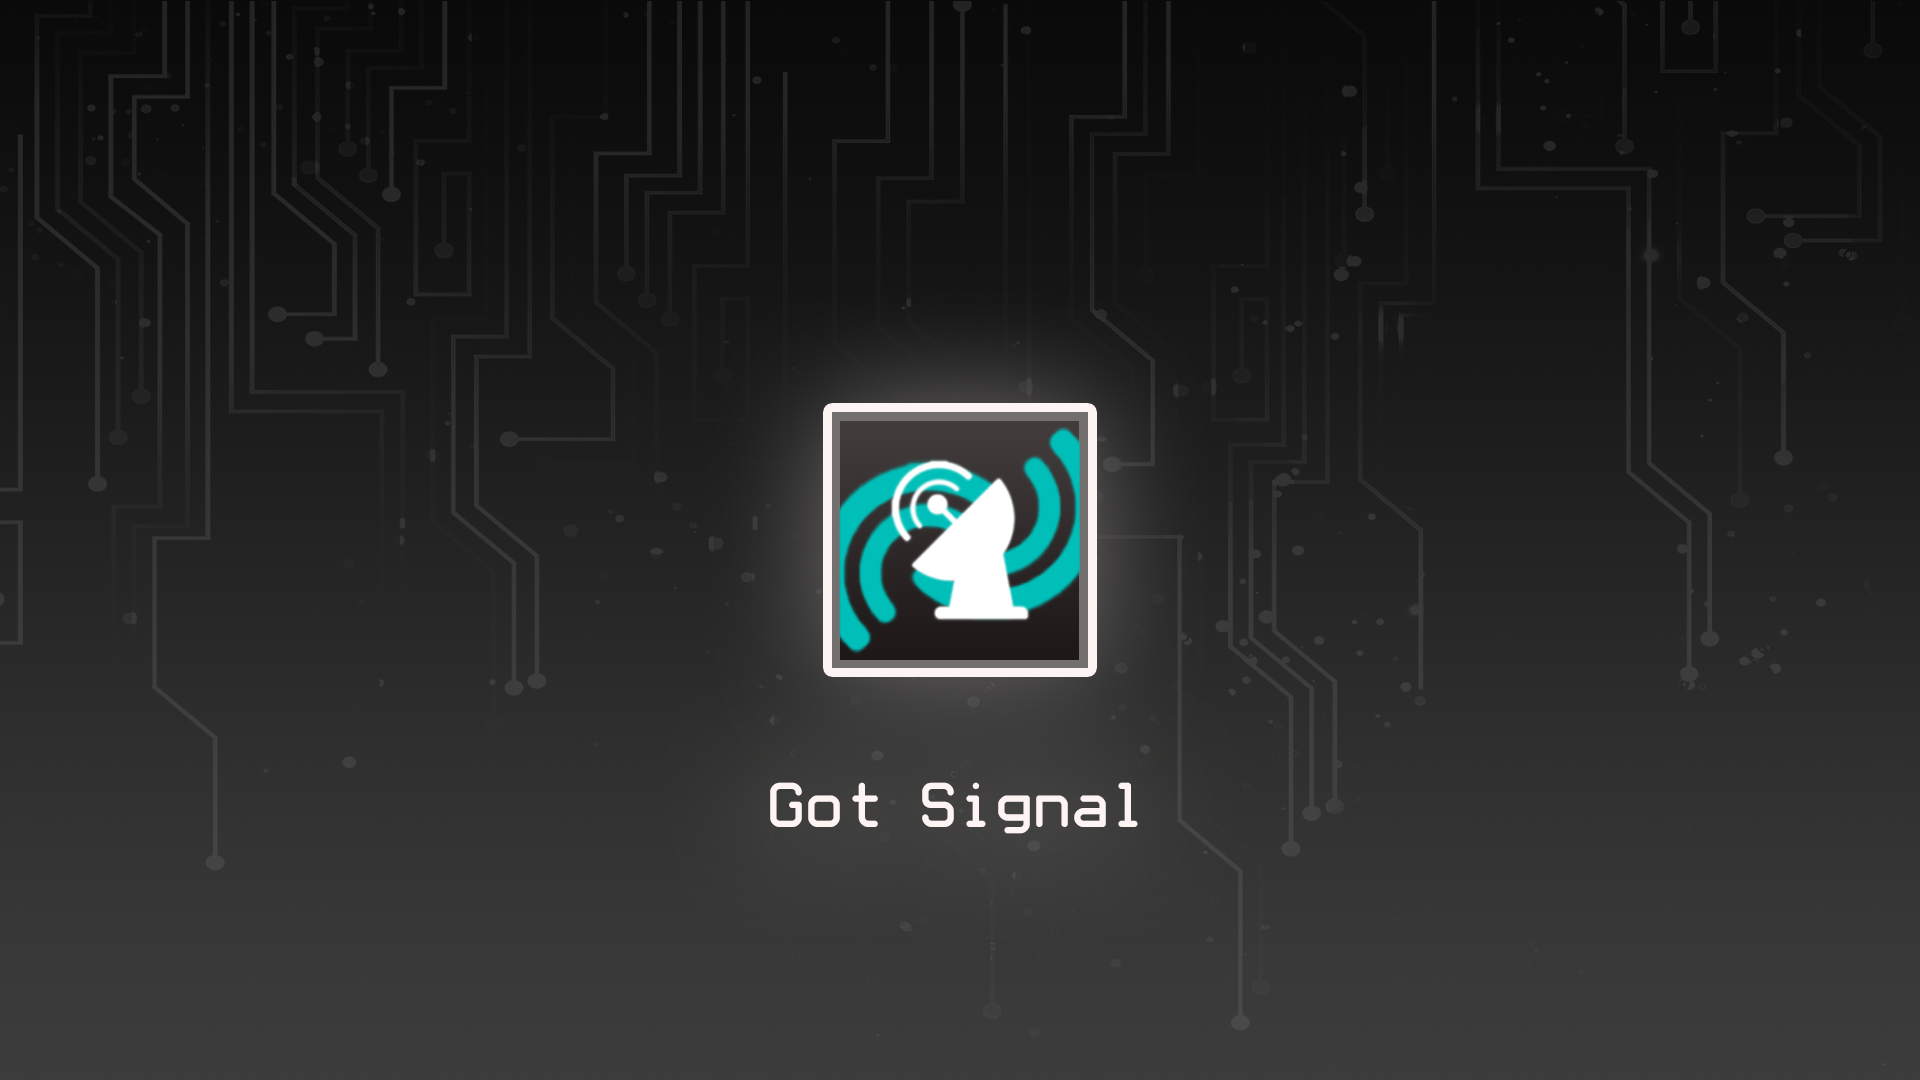 Got Signal